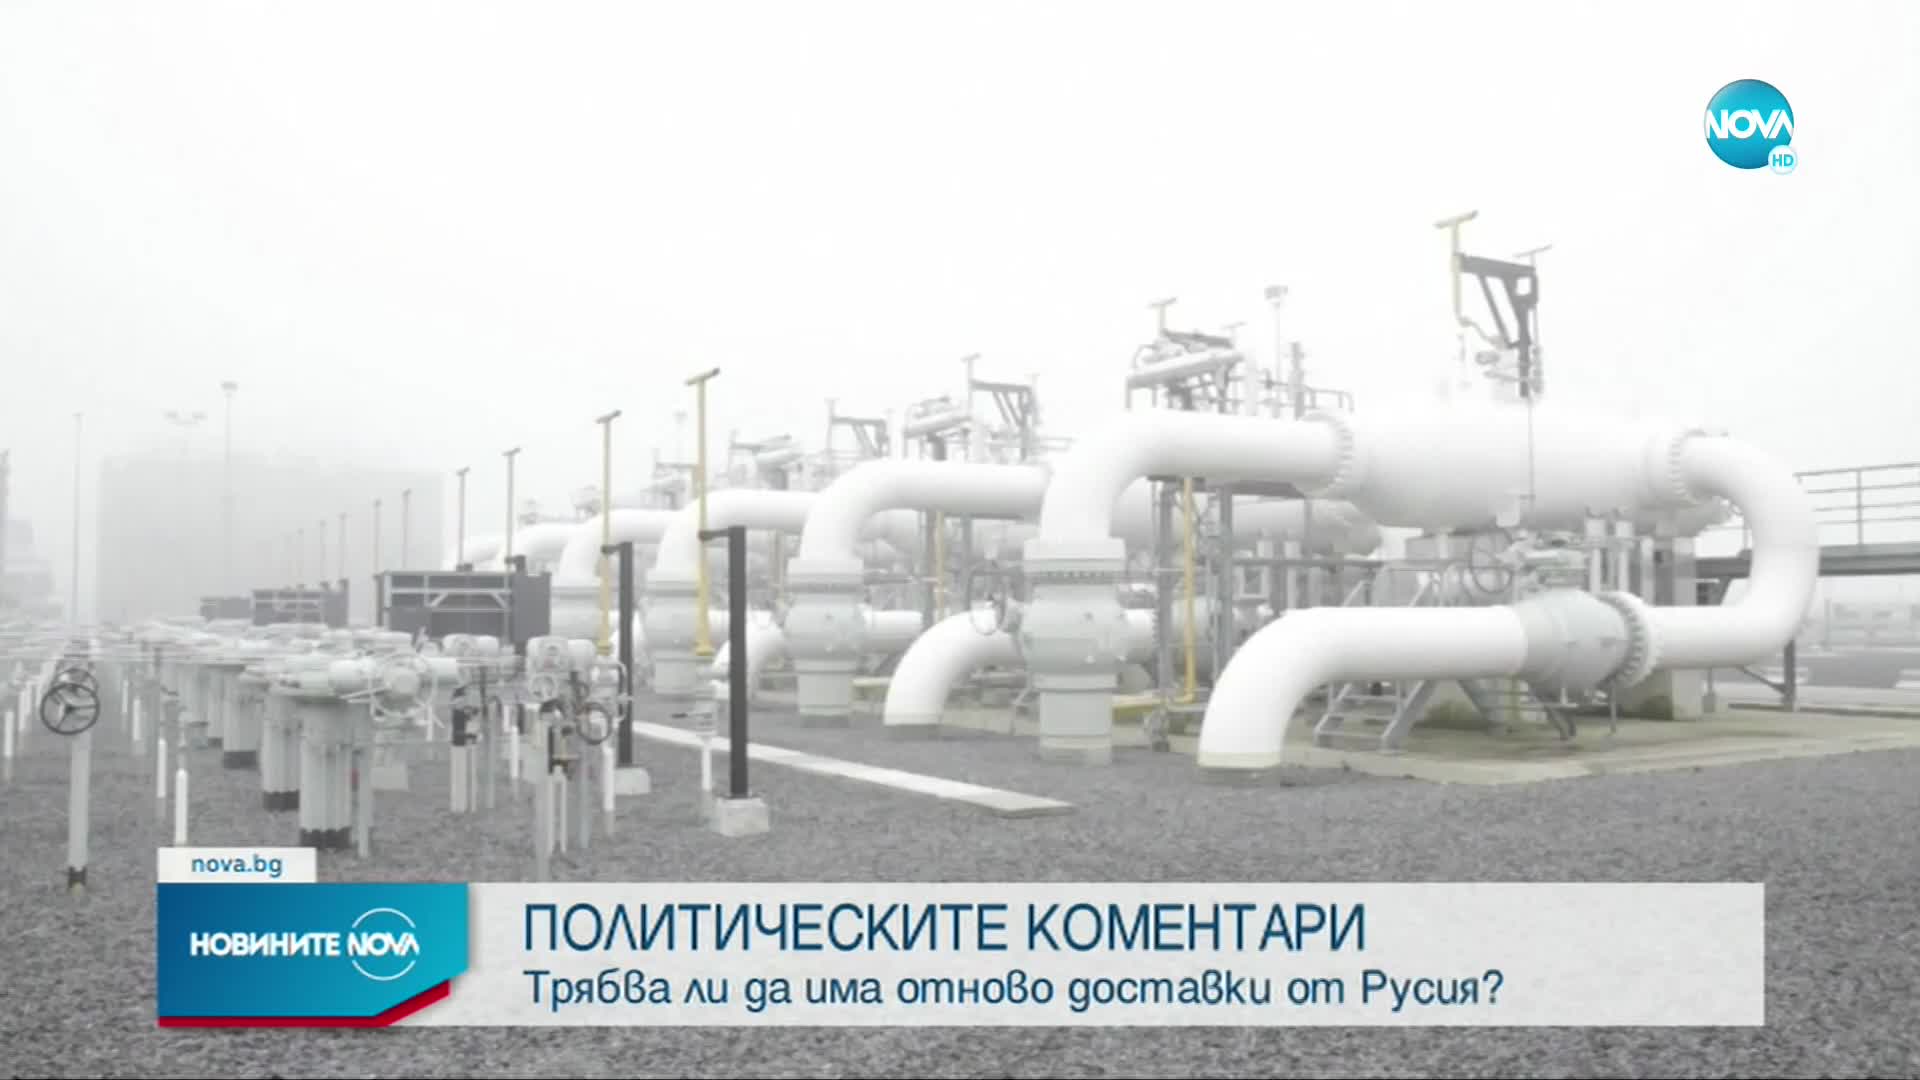 Трябва ли да има отново доставки на газ от Русия